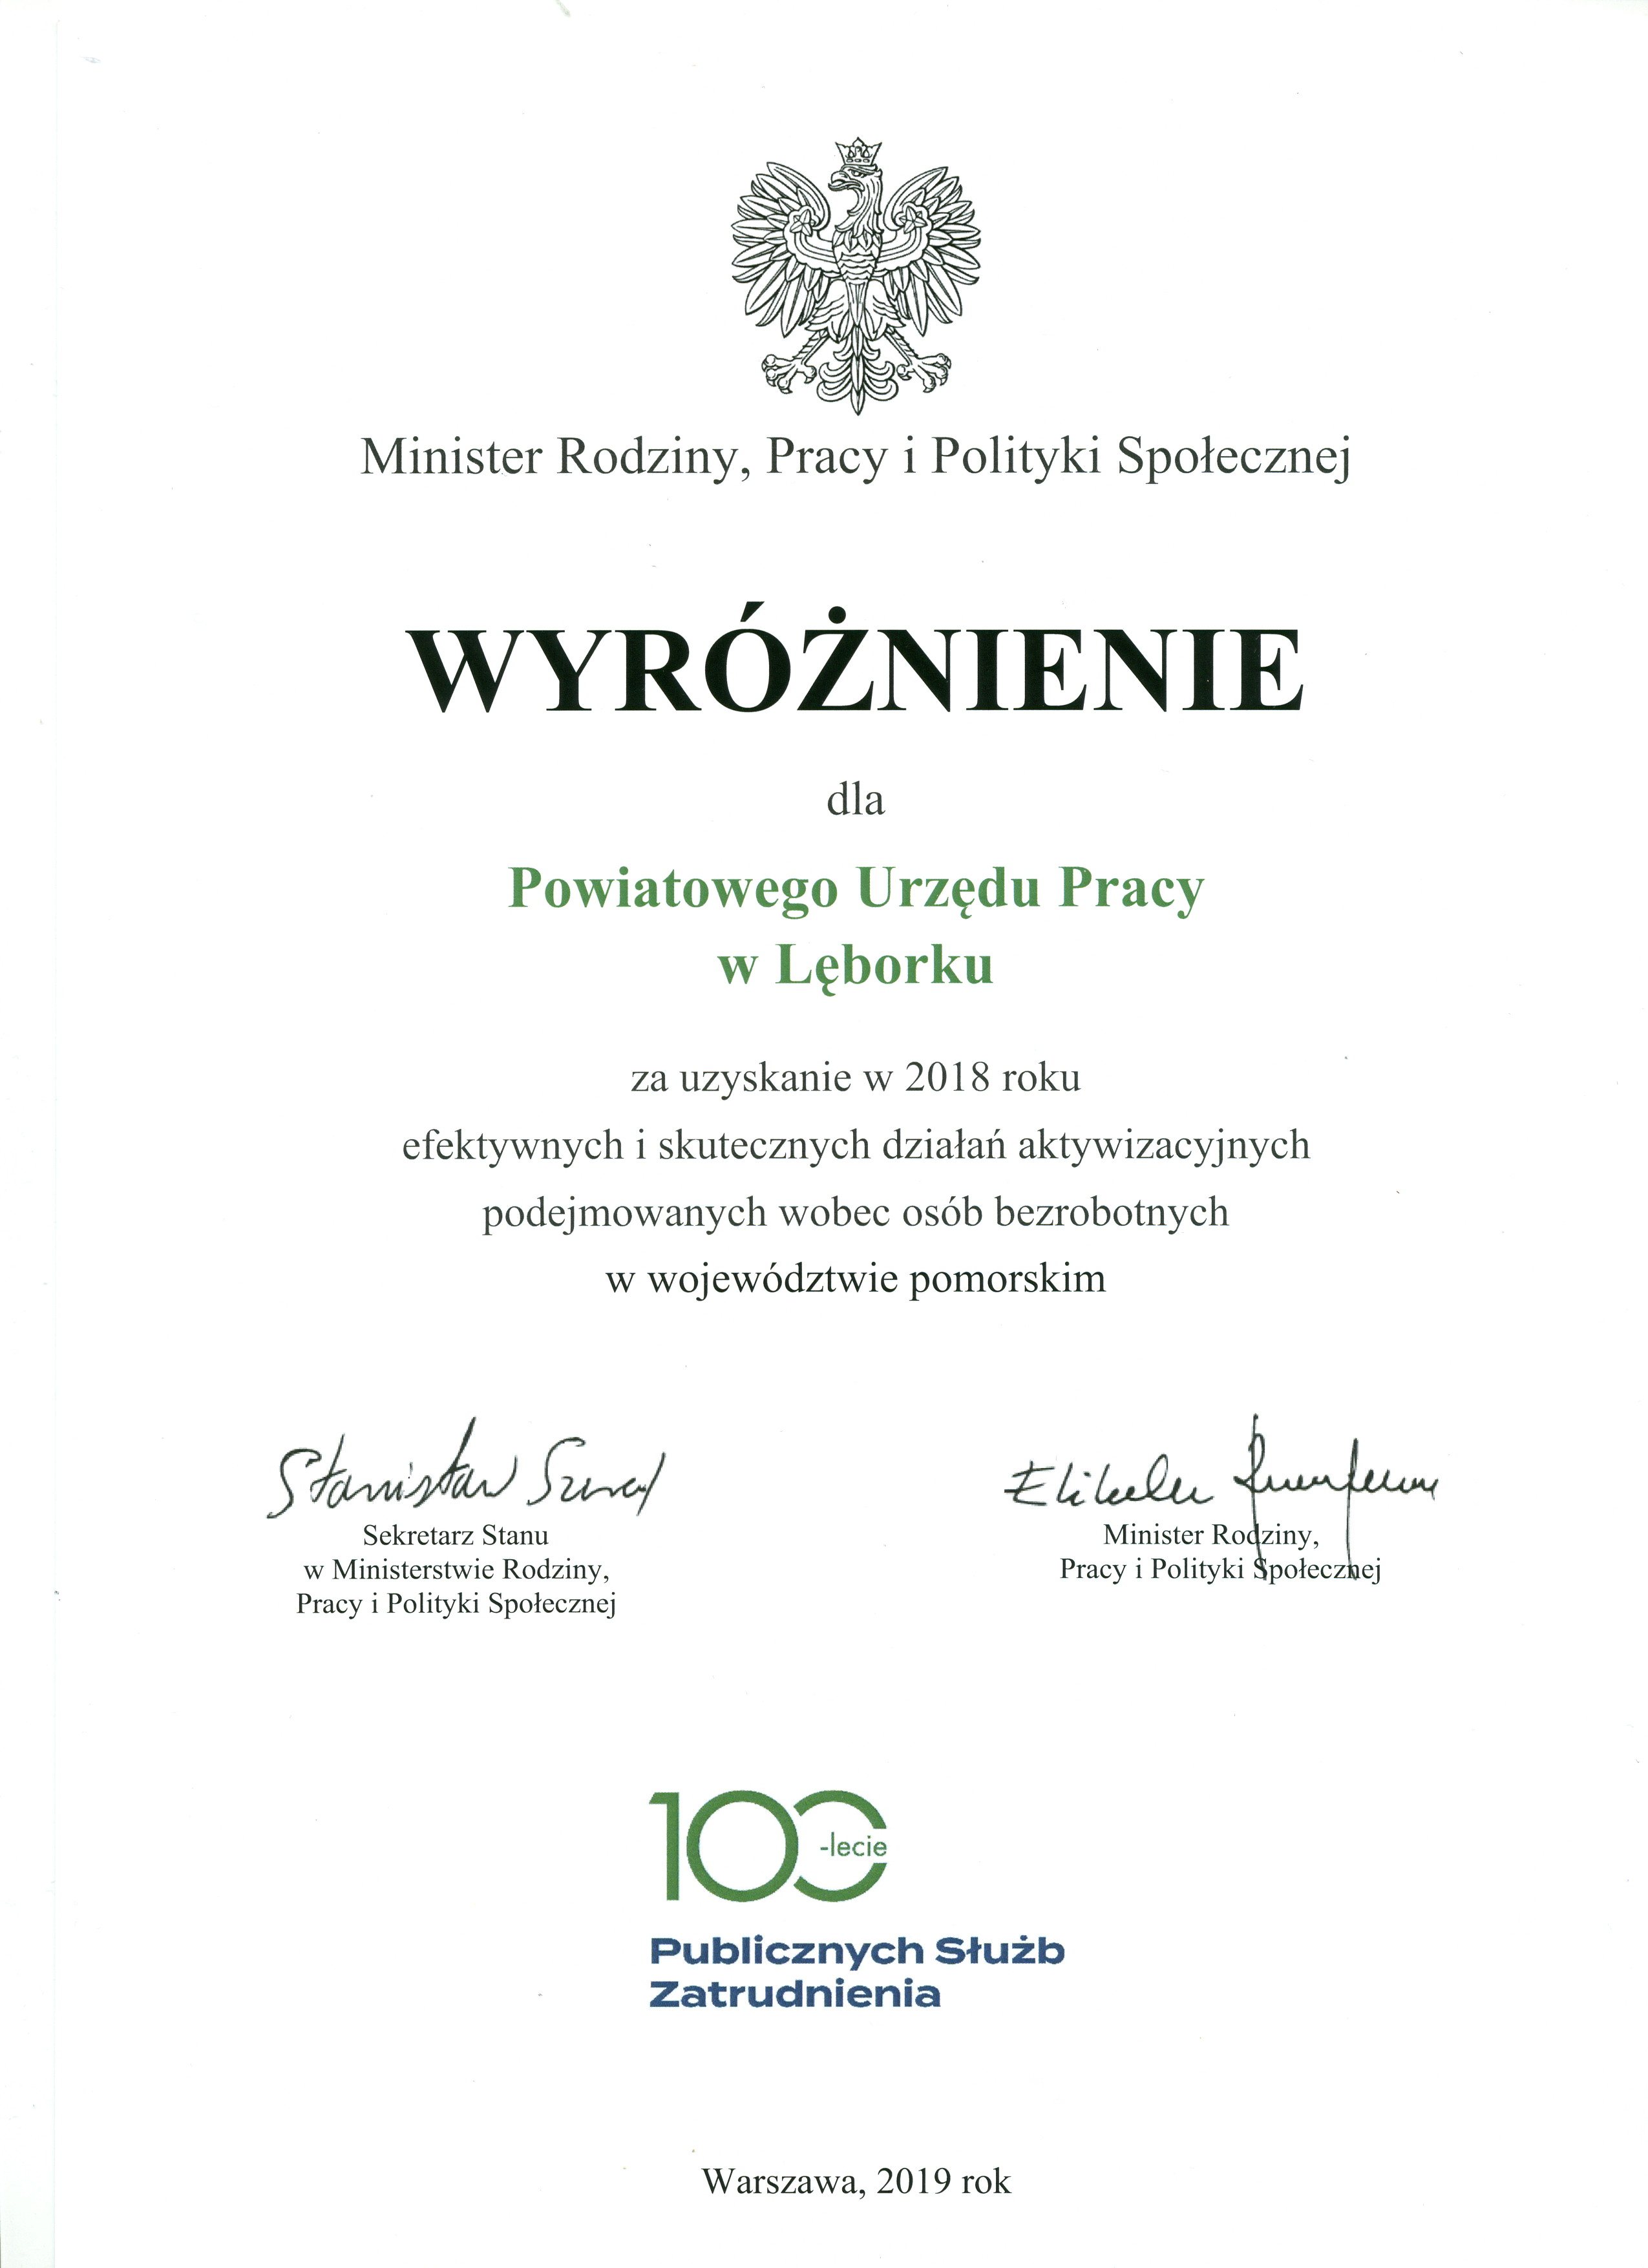 Dyplom z wyróżnieniem dla Powiatowego Urzędu Pracy w Lęborku